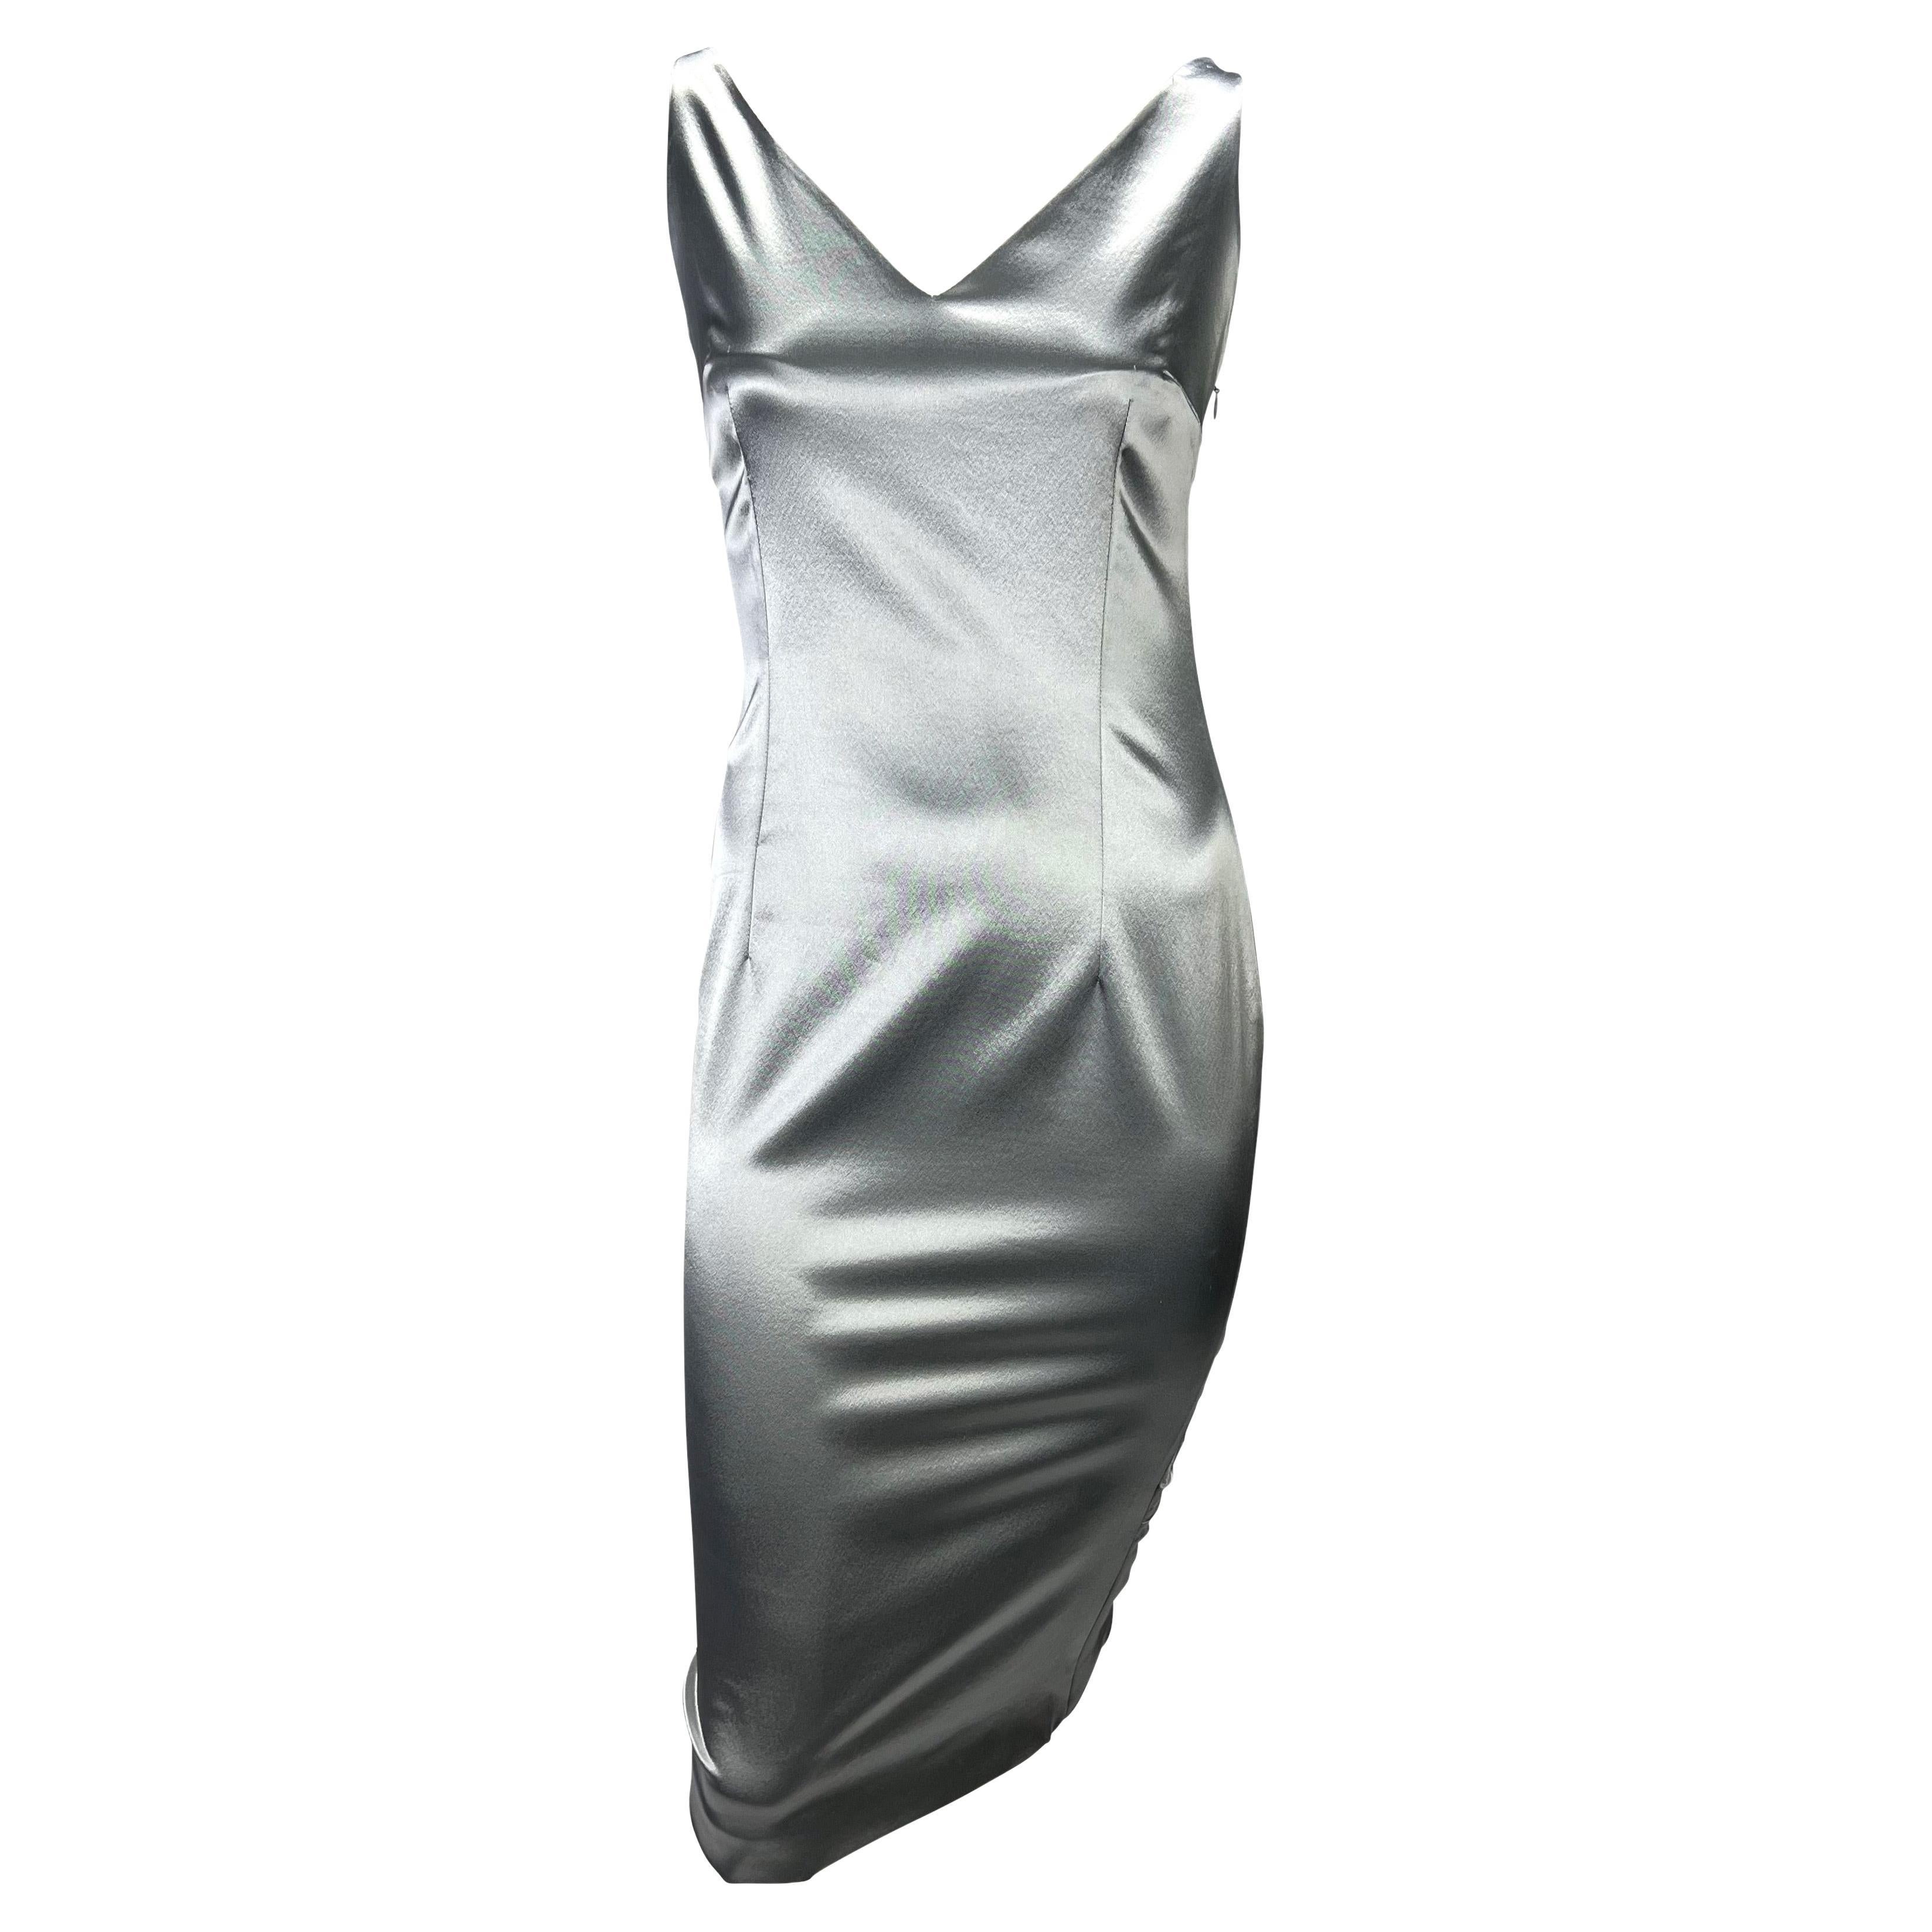 Voici une magnifique robe en satin argenté Christian Dior Boutique, dessinée par John Galliano. Issue de la collection printemps/été 2004, cette magnifique robe de couleur bronze présente un décolleté en V, une échancrure en V dans le dos et des